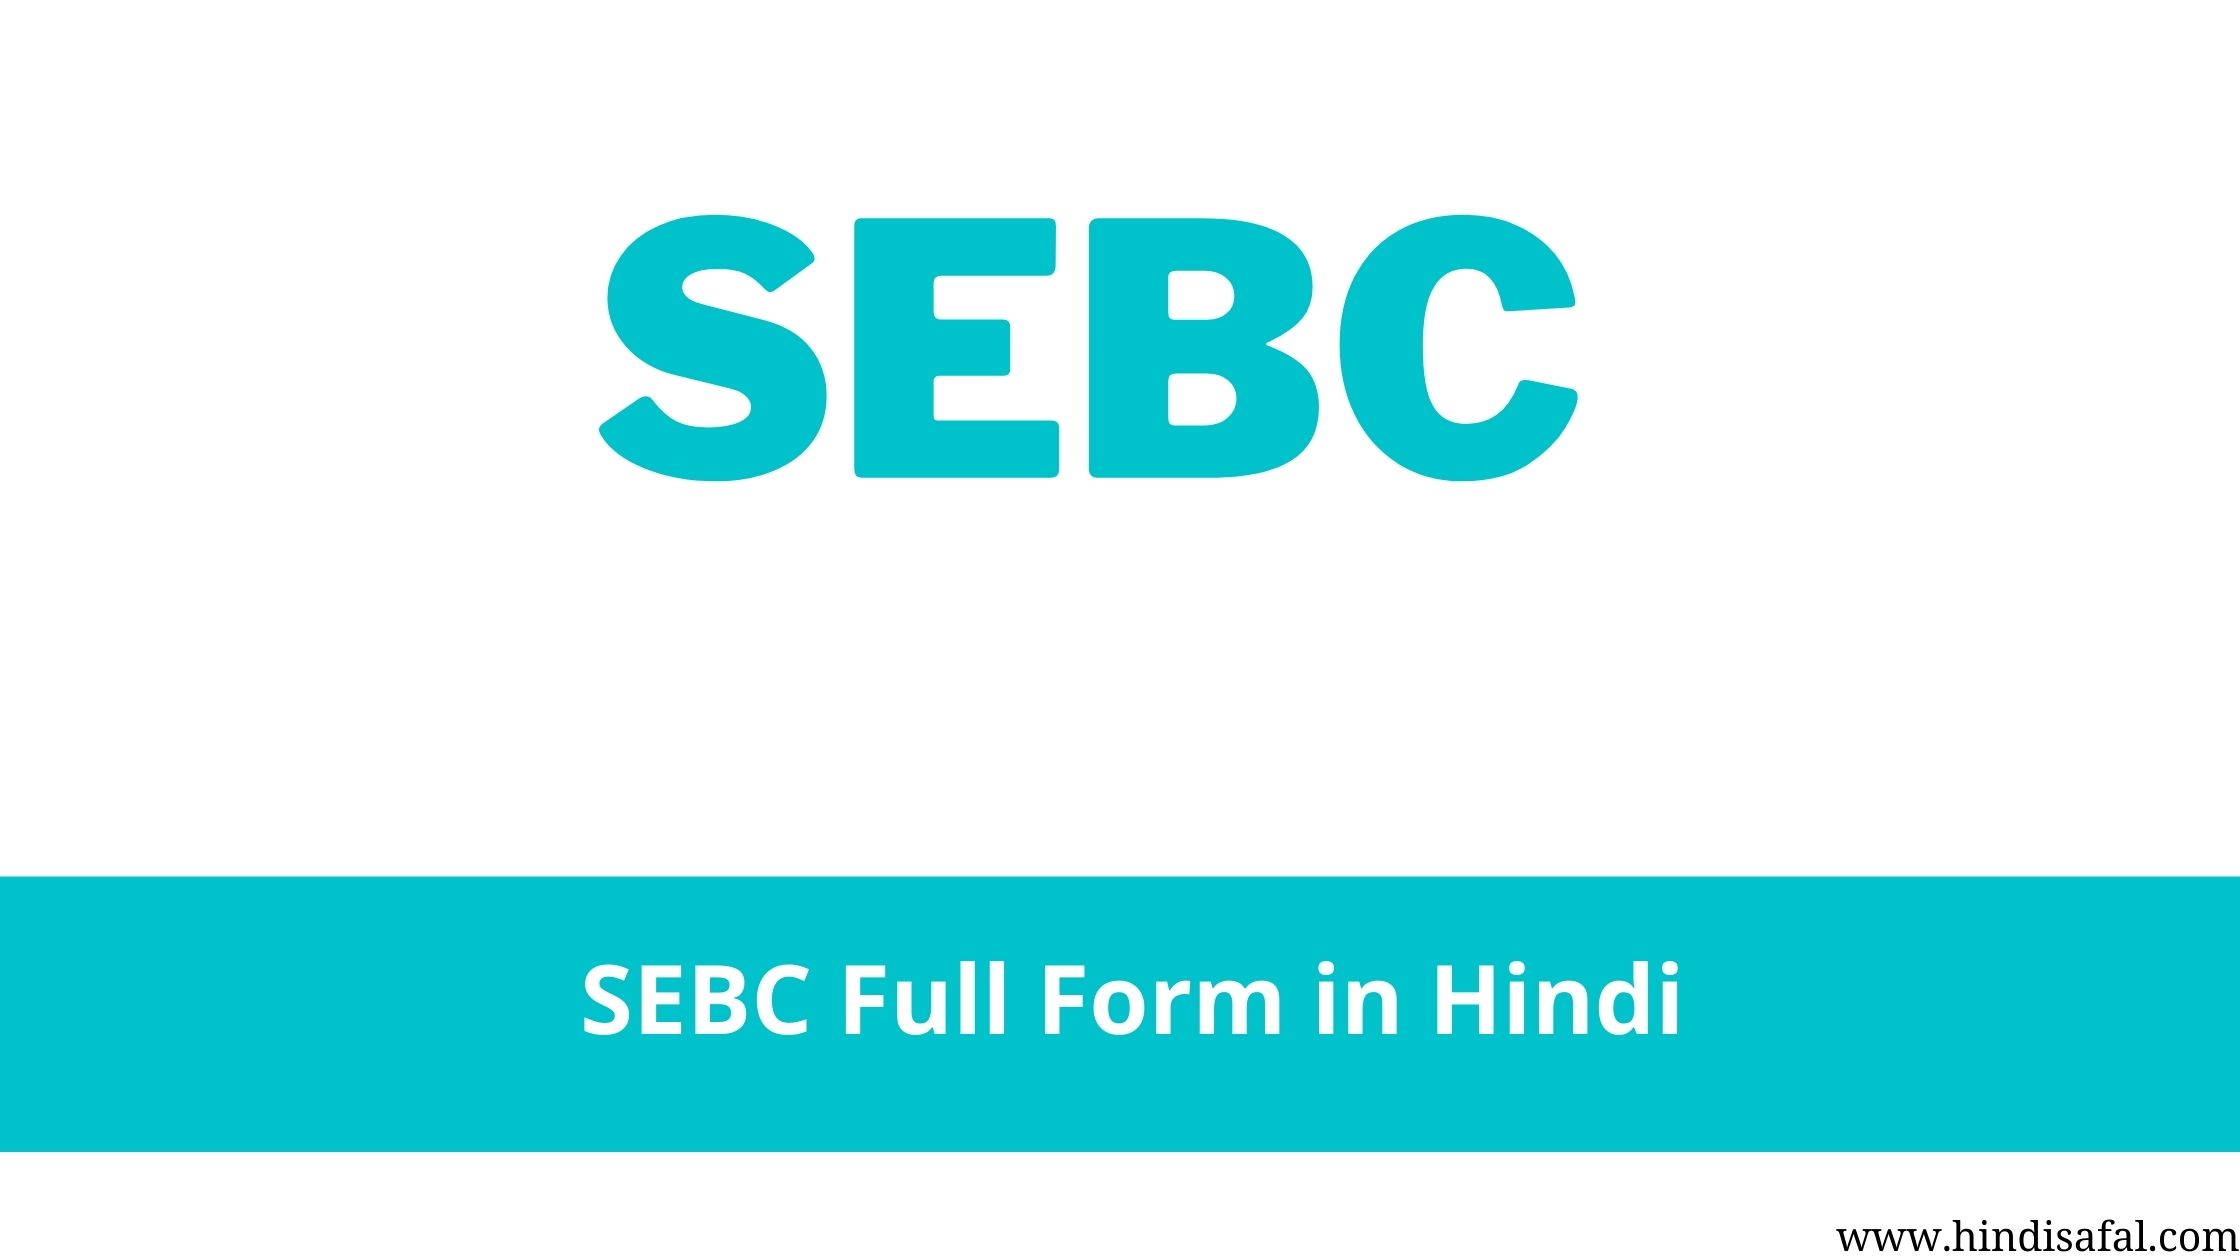 SEBC Full Form in Hindi